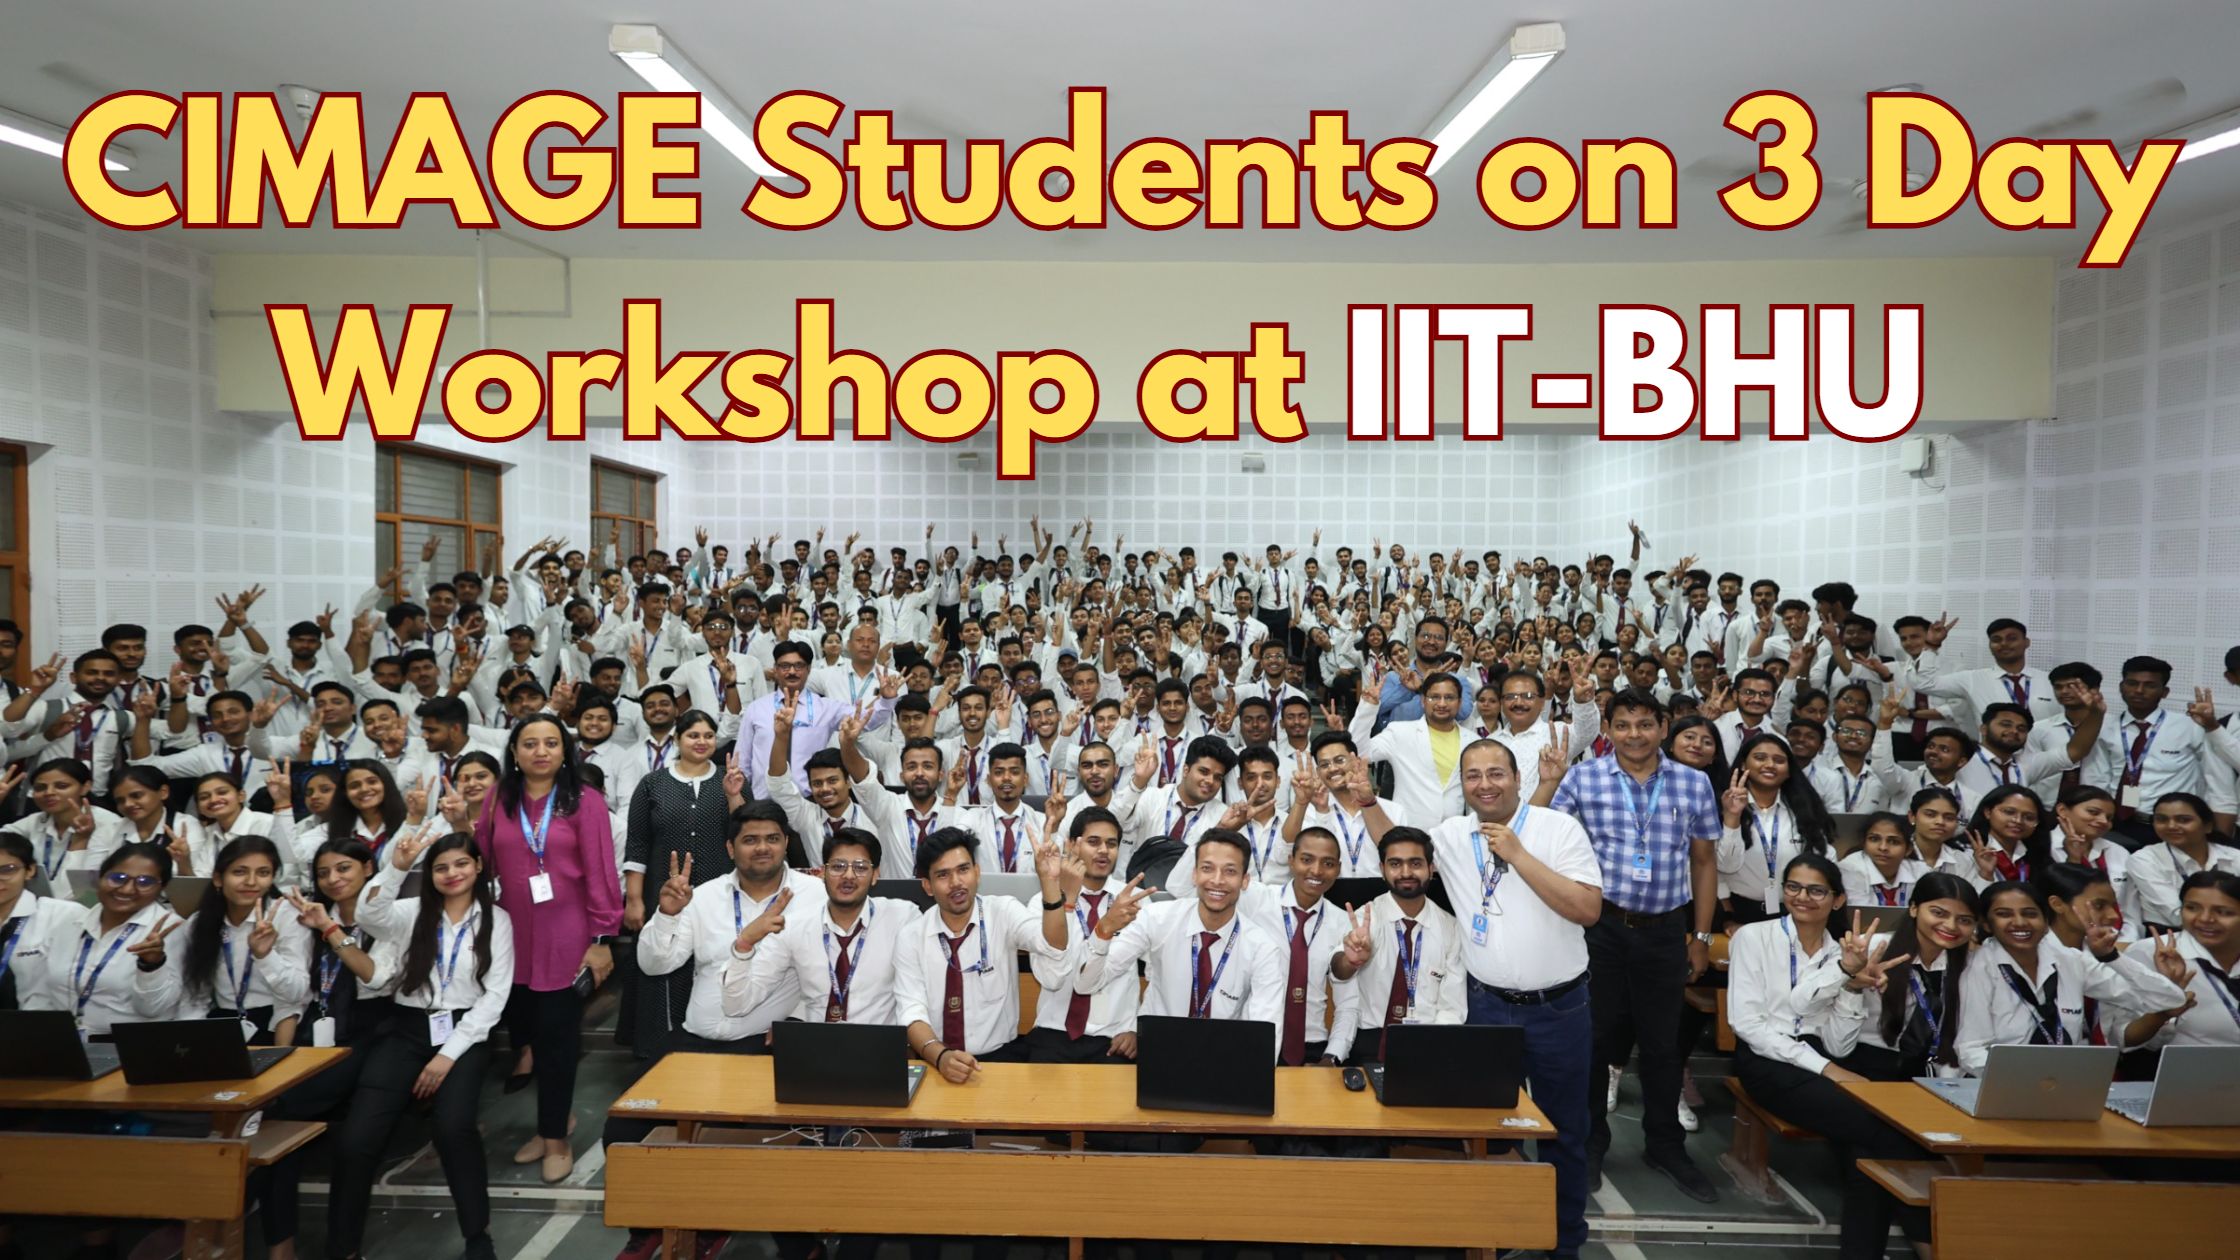 सिमेज के 300 छात्रों ने IIT-BHU में किया तीन दिवसीय वर्कशॉप | छात्रों ने CHAT-GPT, IOT, Ethical Hacking, Game Development पर किया कोर्स>